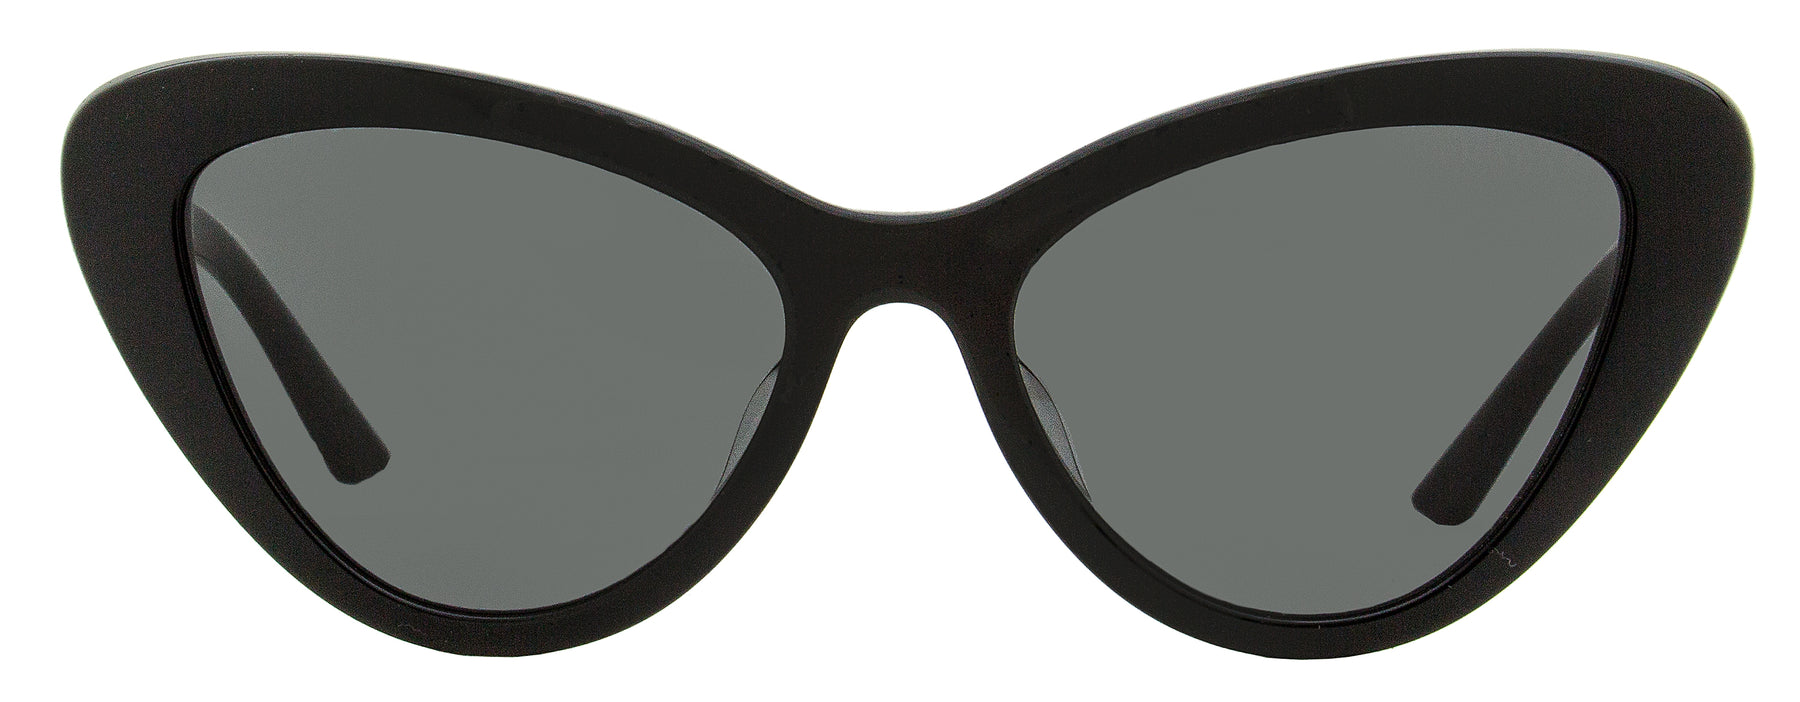 Prada Women's Cat Eye Sunglasses Spr13y-f 1ab-5s0 Black 54mm | Shop ...